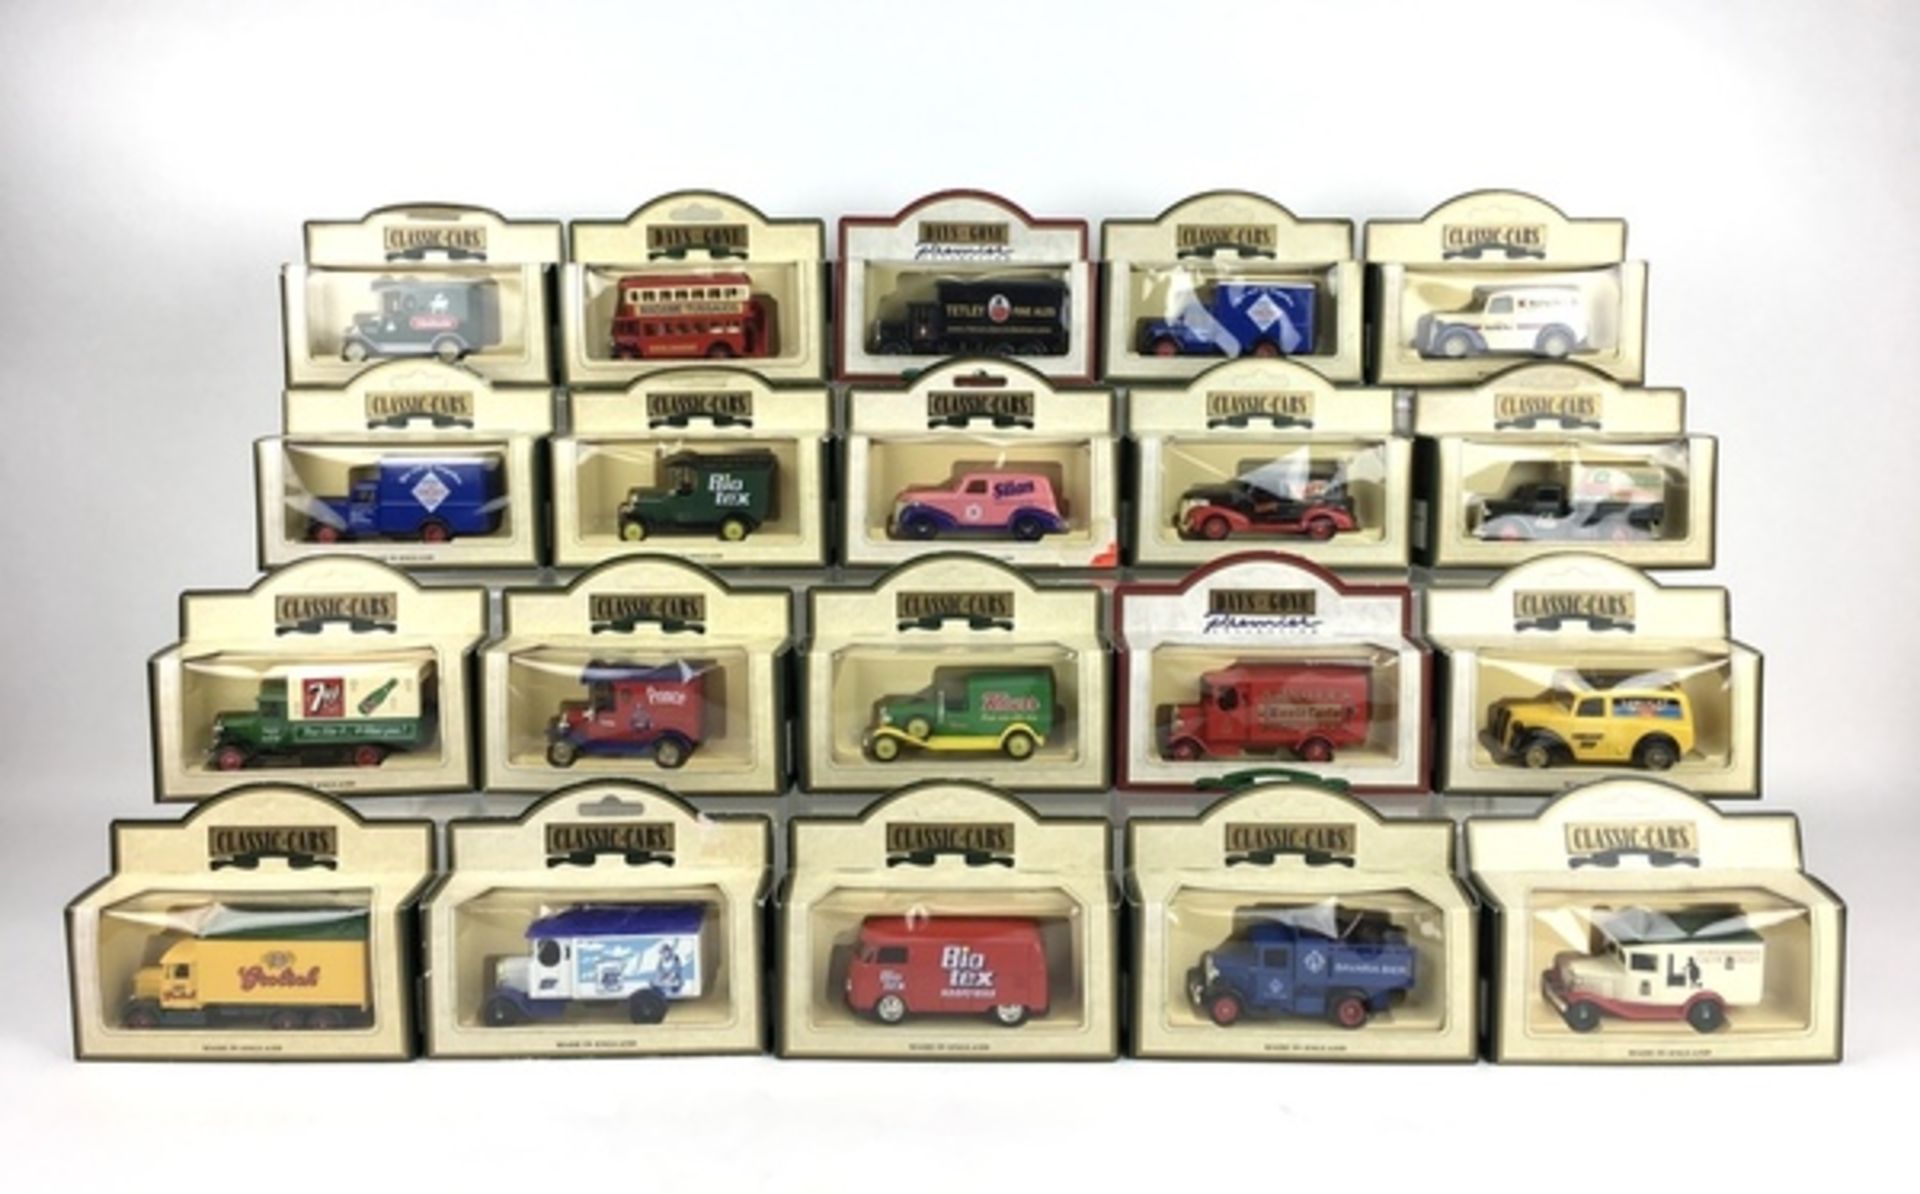 (Speelgoed) Speelgoedauto’s Classic Cars, EngelandSpeelgoedauto’s Classic Cars, Engeland. C